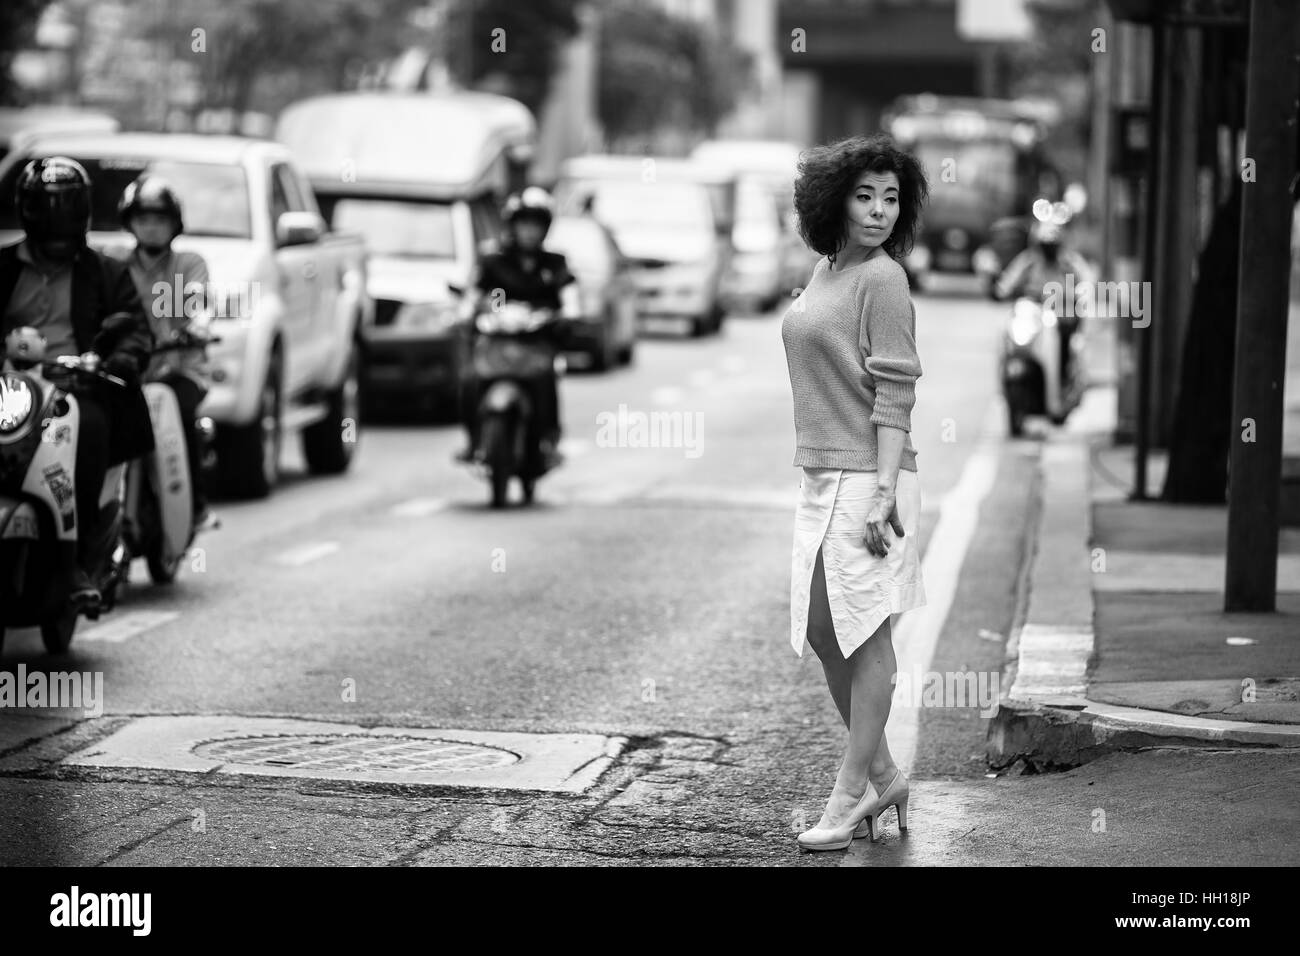 Asiatische Frau auf einer belebten Straße. Schwarz-weiß. Stockfoto